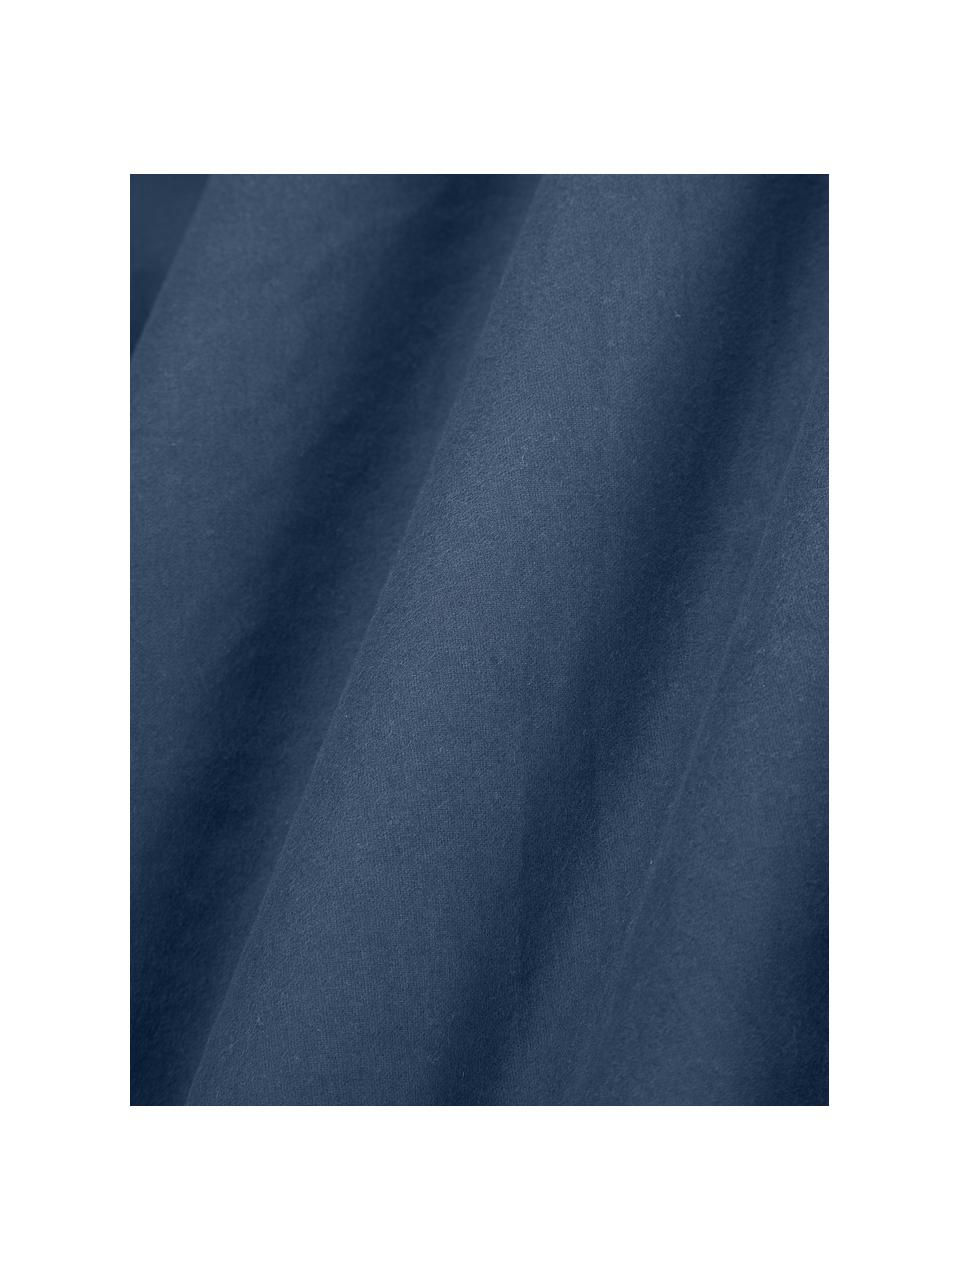 Sábana bajera cubrecolchón de franela Biba, Azul oscuro, Cama 200 cm (200 x 200 x 15 cm)